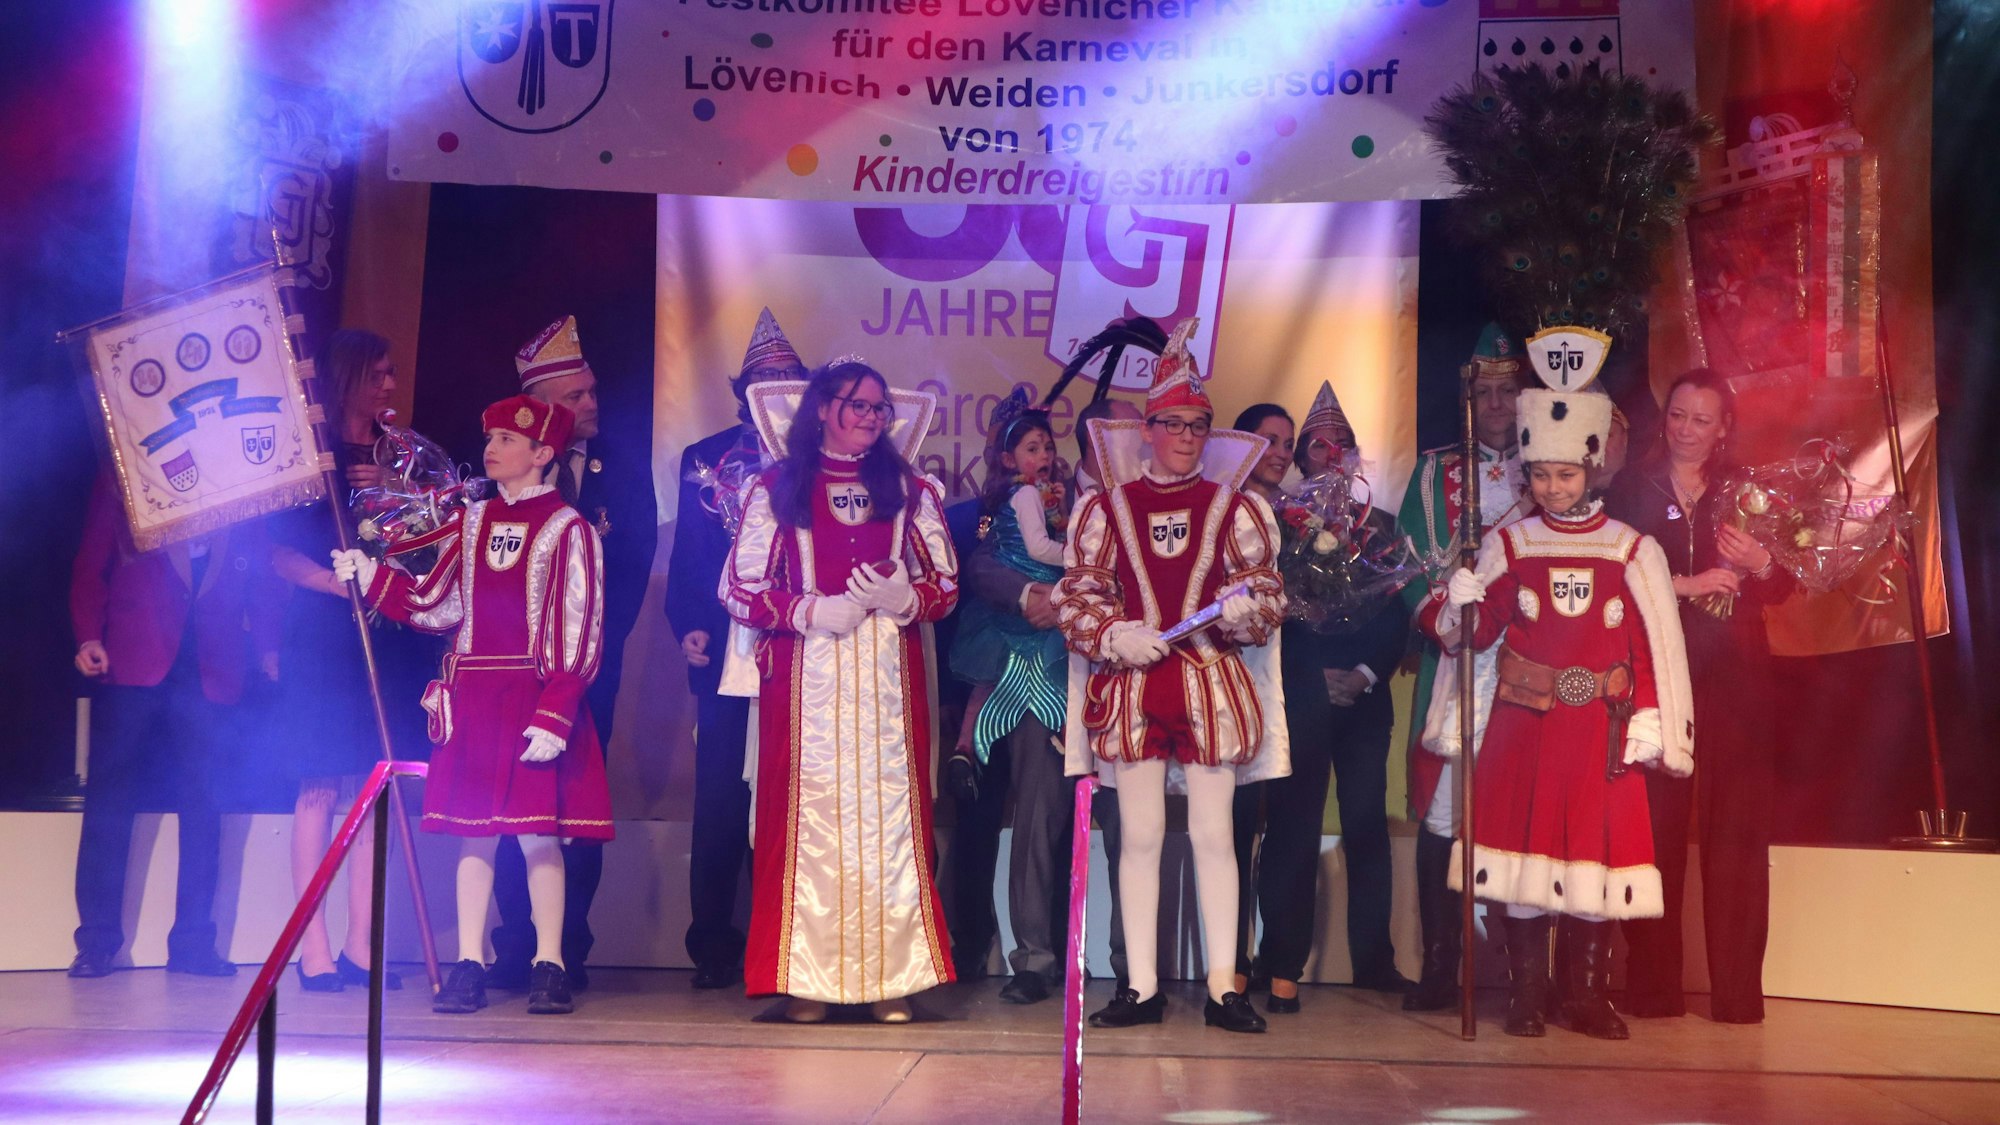 Vier Kinder in rot-weißen Karnevalstrachten stehen auf der Bühne. Hinter ihnen sind noch einige Erwachsene im Kostüm zu sehen.